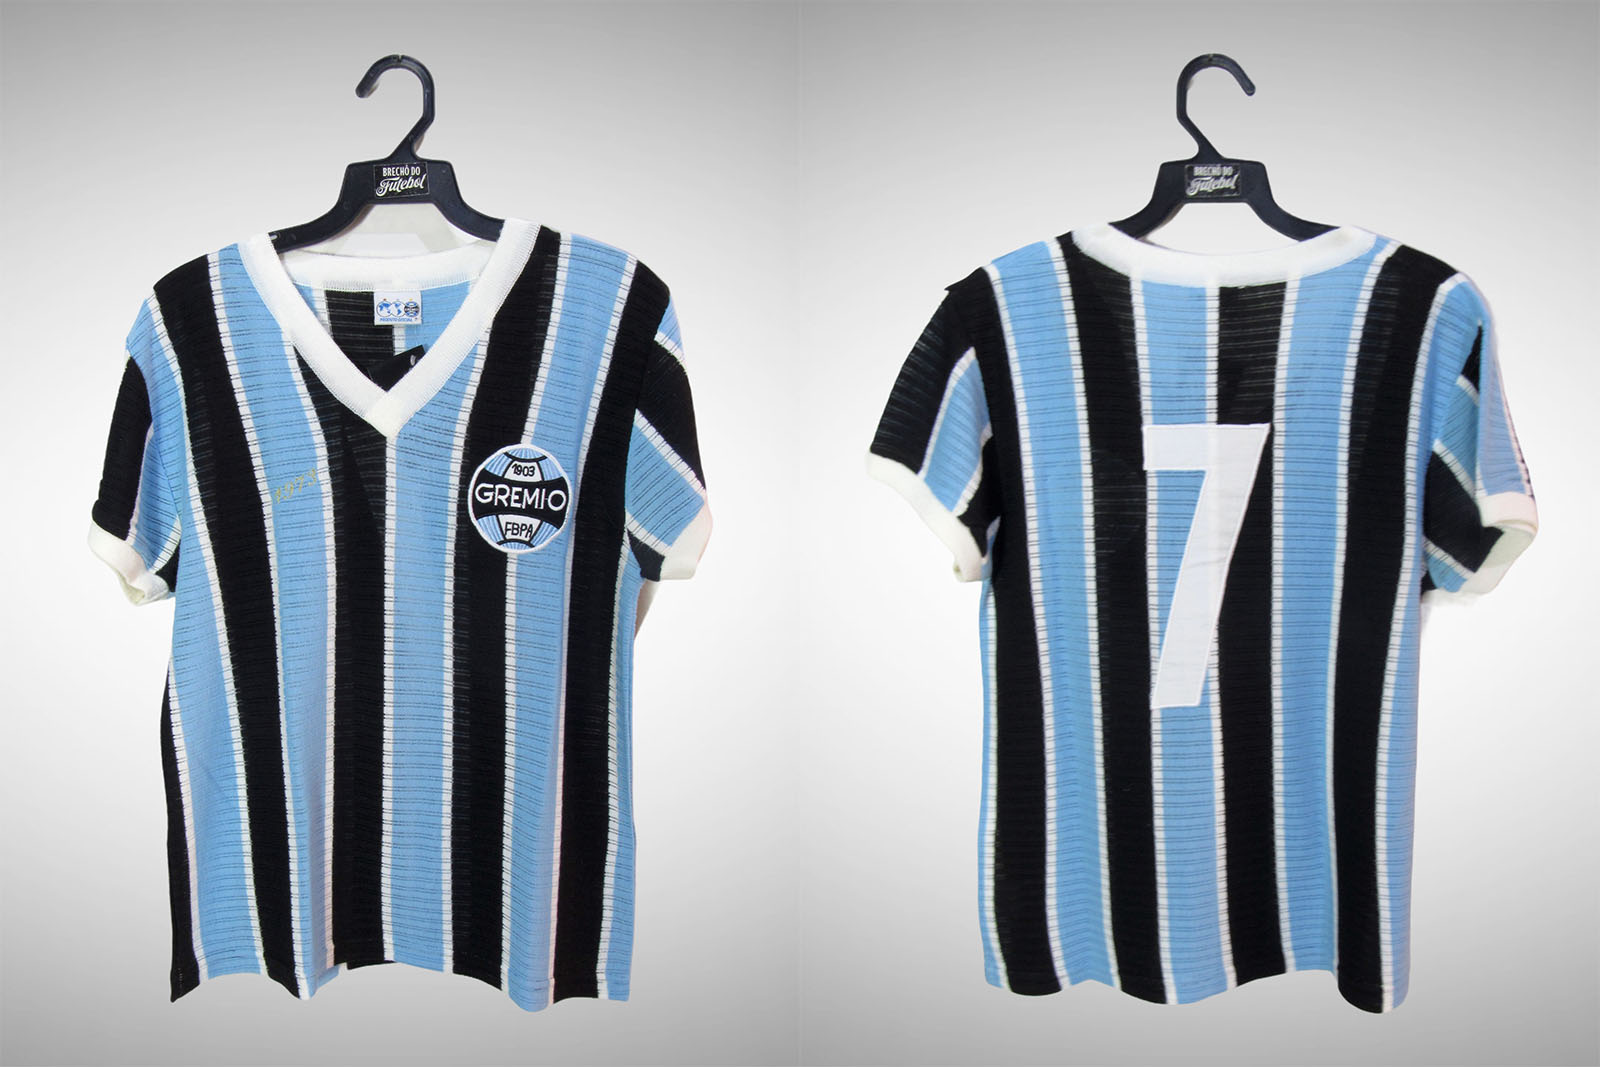 Puma cria camisa retrô para o Independiente da Argentina  Camisa de  futebol, Camisas de futebol, Camisas retro futebol